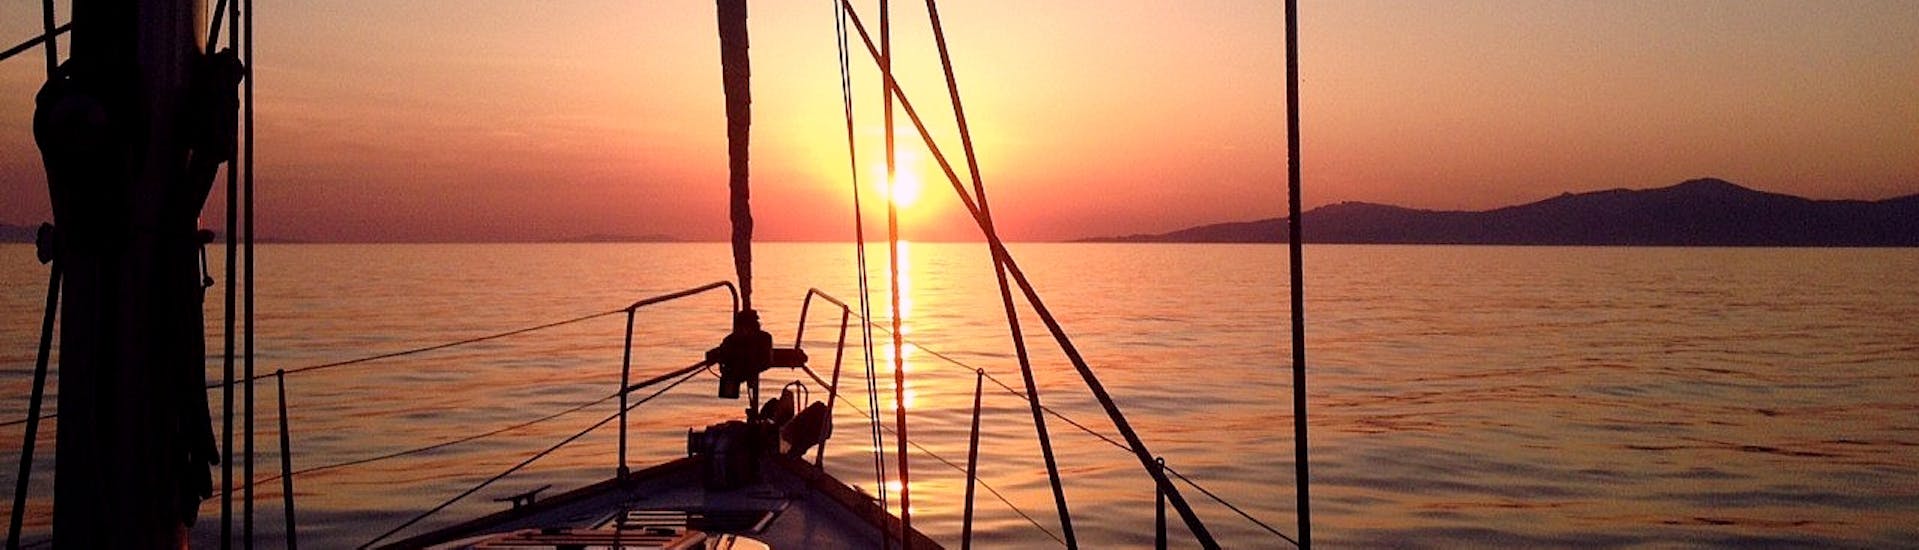 De kleurrijke zonsondergang boven de Egeïsche Zee schildert het blauwe water, met een zeilboot voor zonsondergang boottocht van Mykonos naar Rhenia met Set Sail Mykonos.